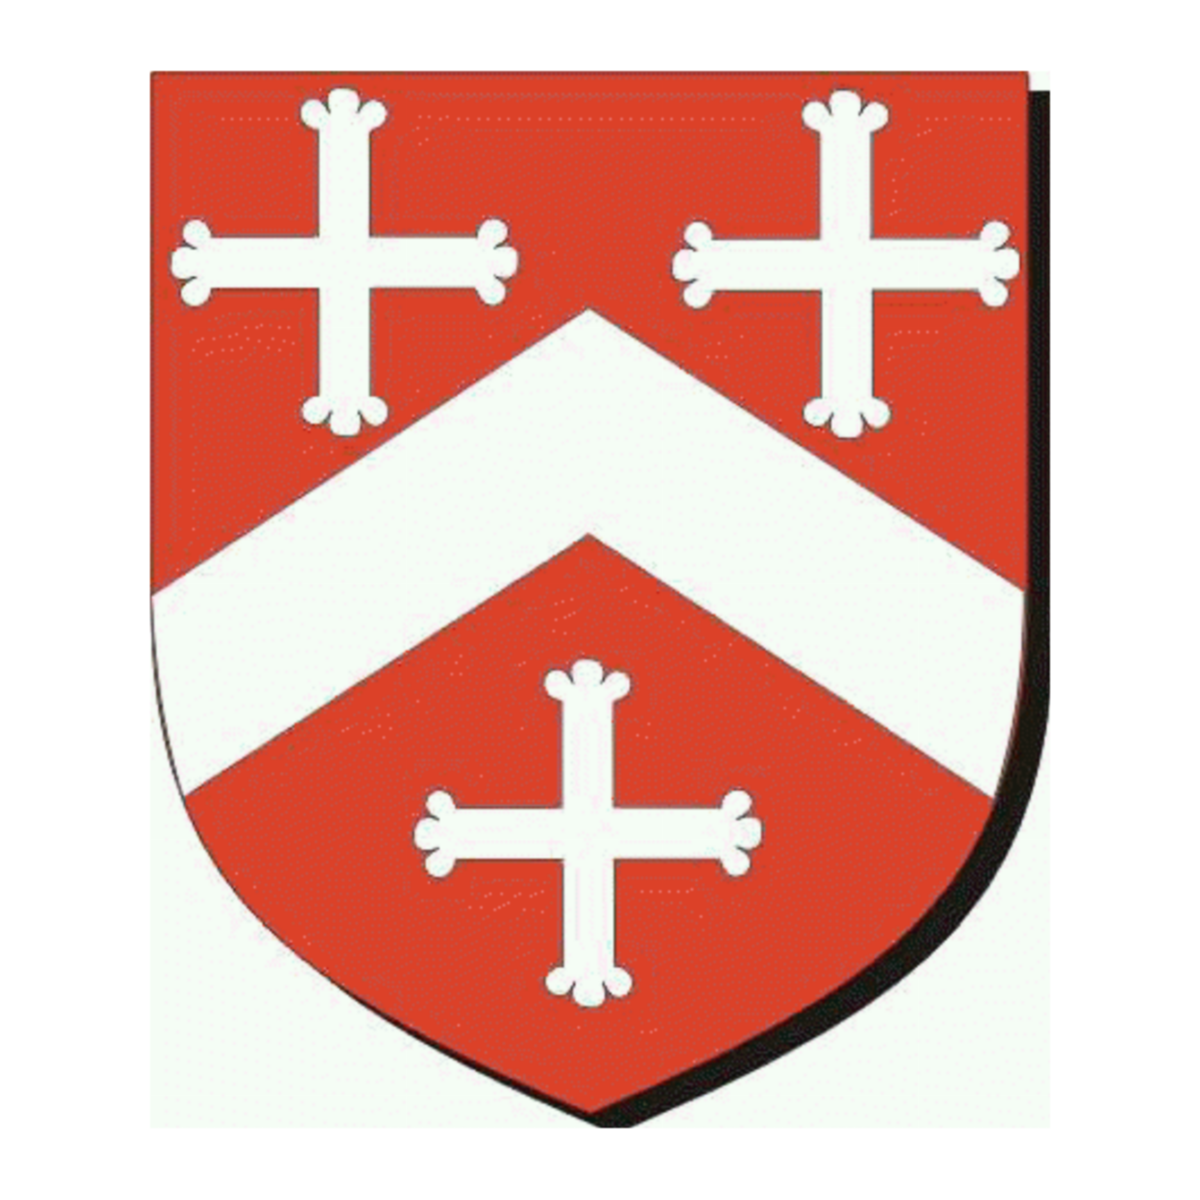 Wappen der FamilieRich